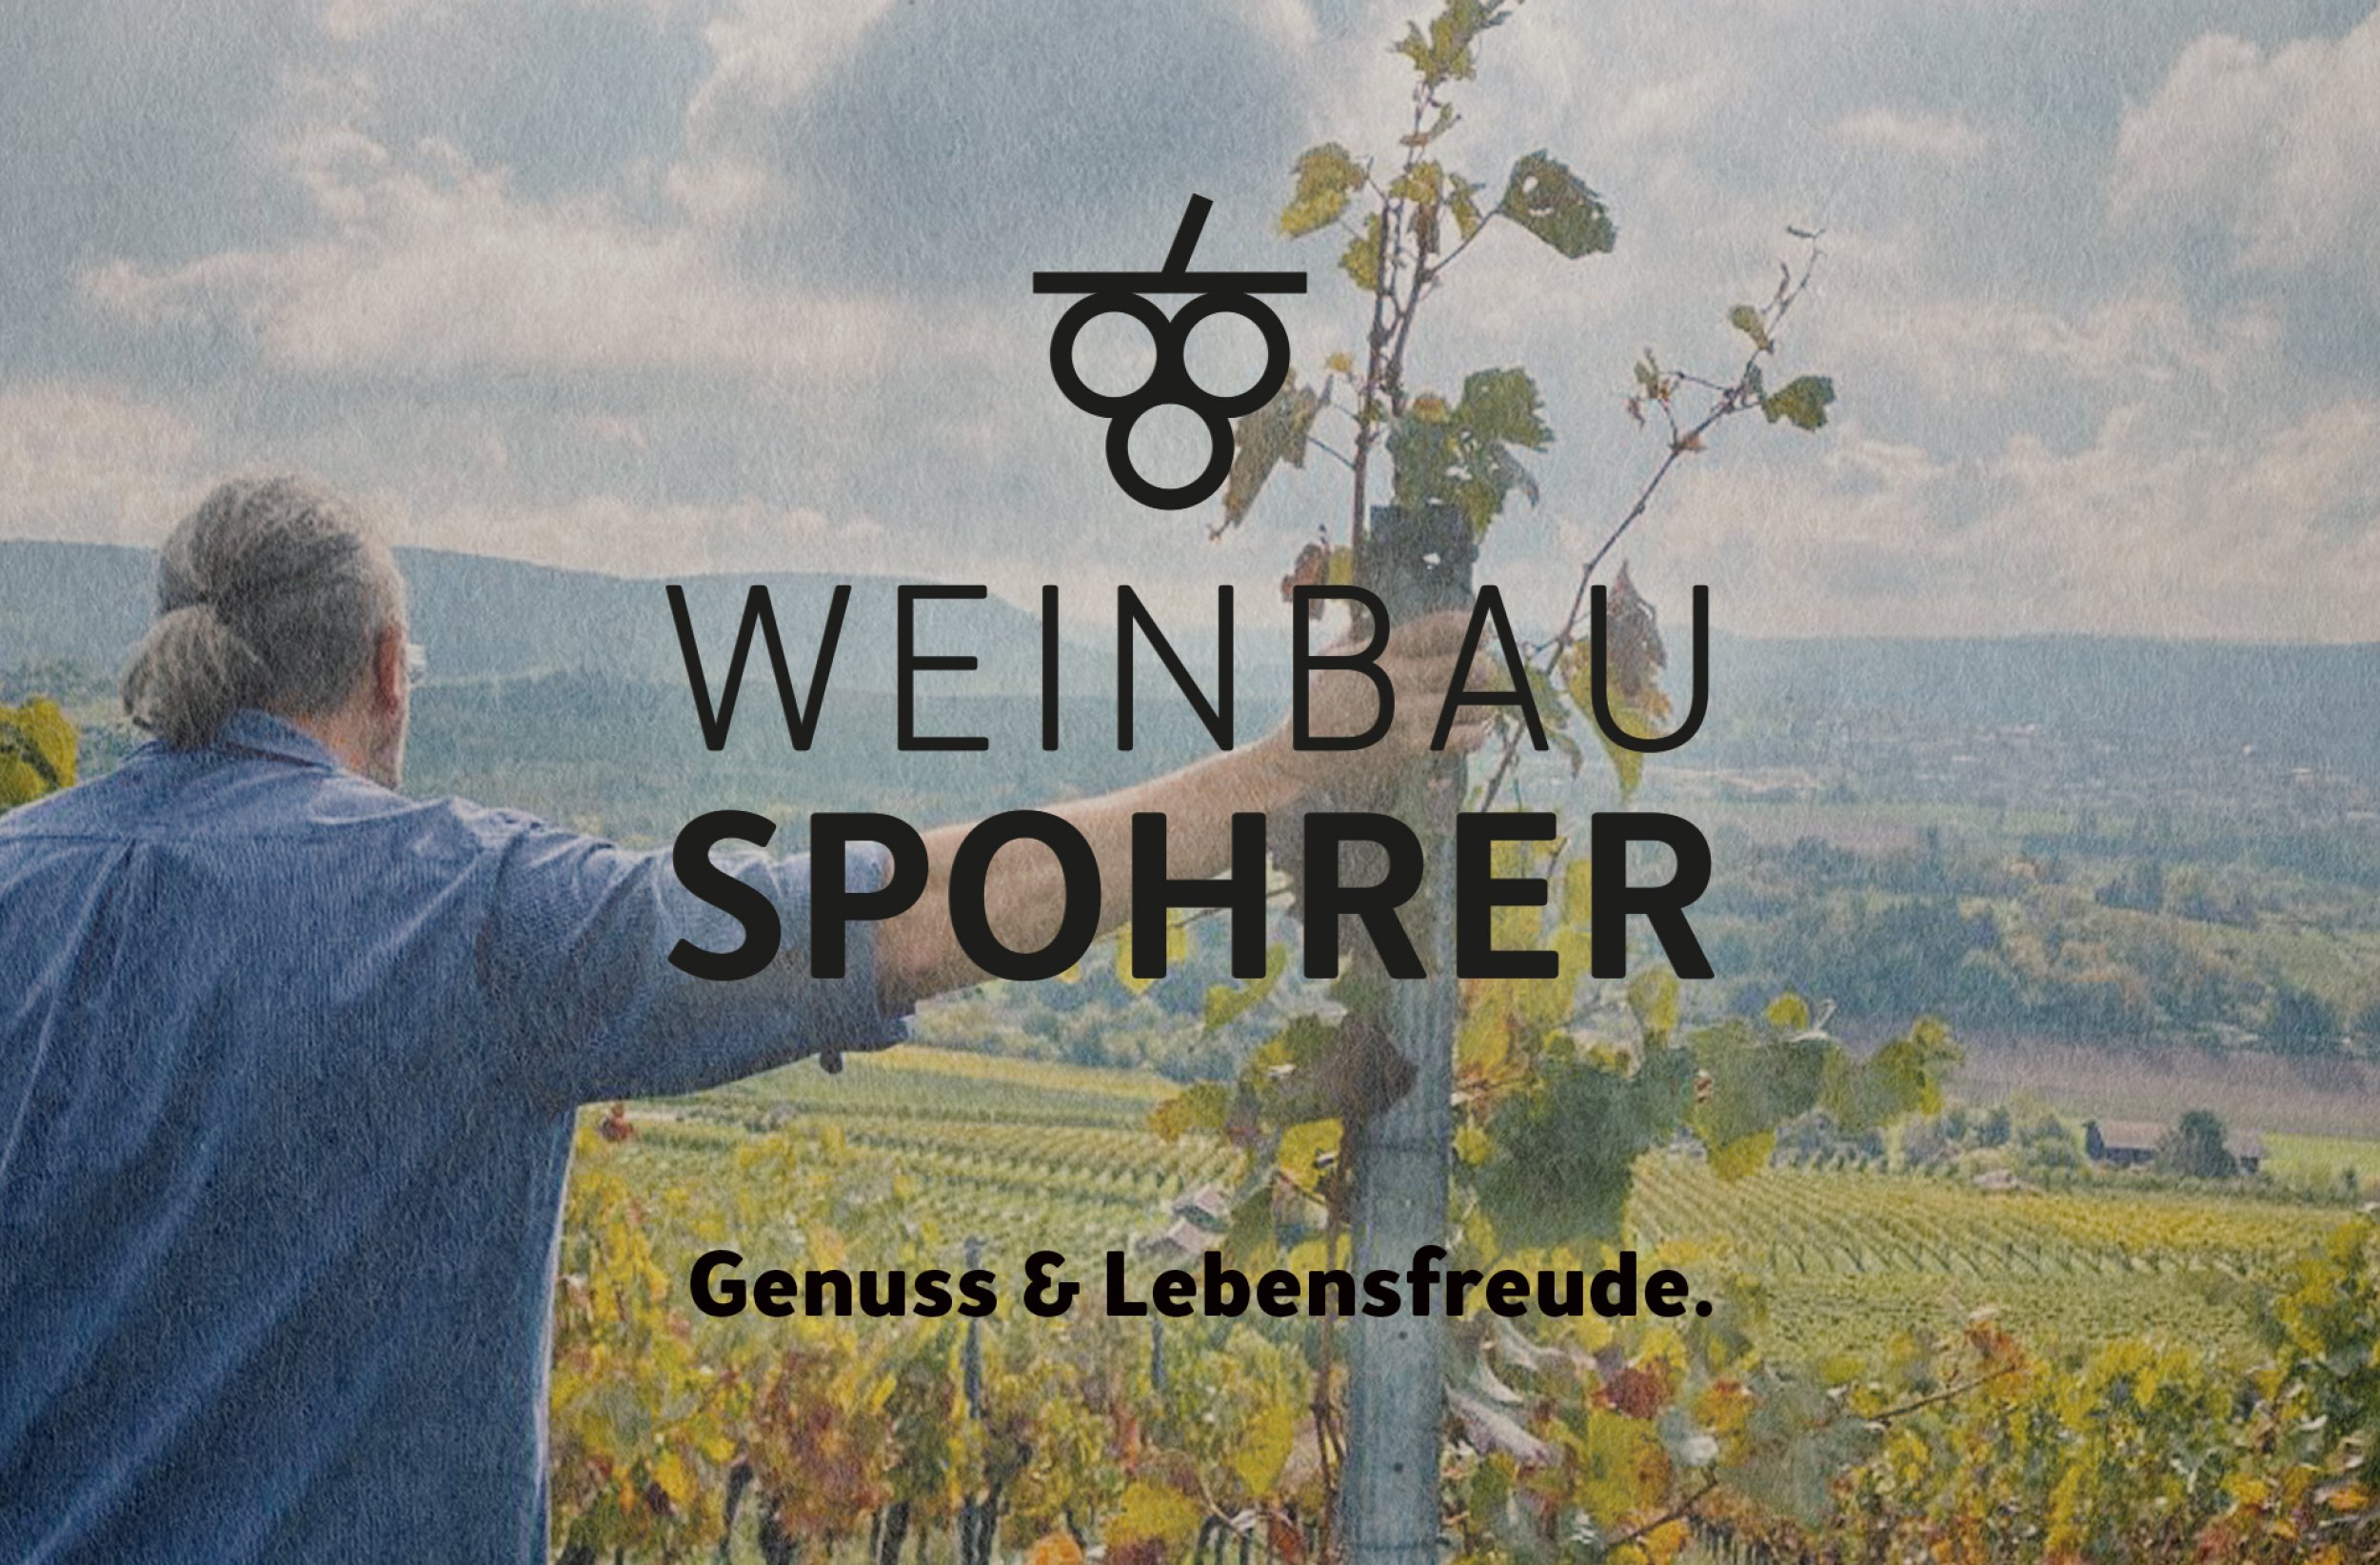 Weinbau Spohrer, Erlenbach, Marke, Design, Dachmarke